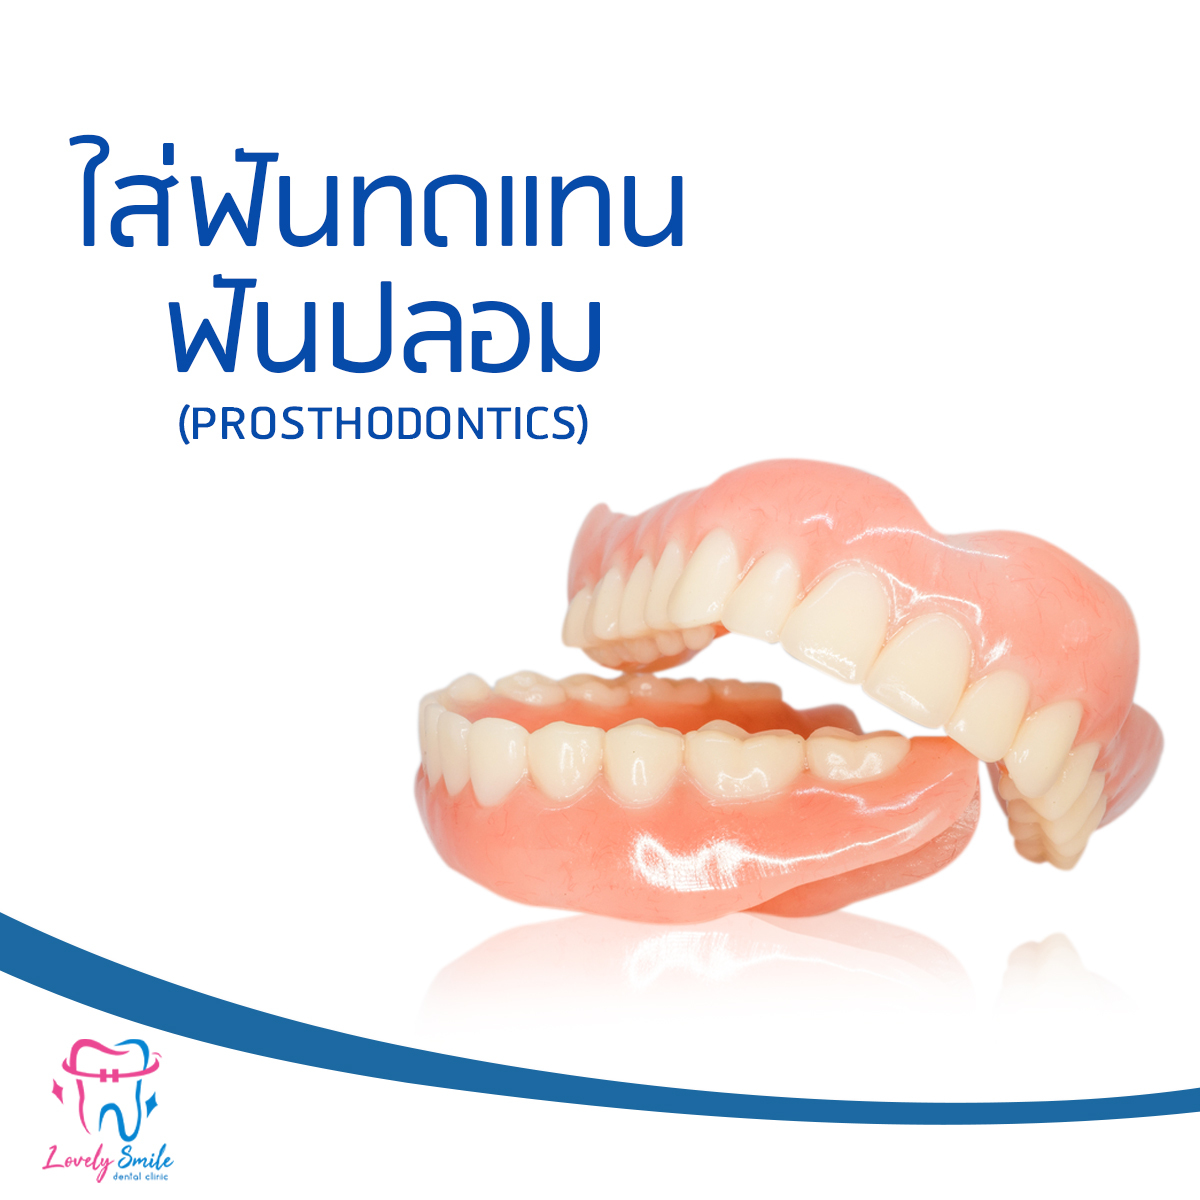 ทันตกรรมใส่ฟันทดแทน / ฟันปลอม (Prosthodontics)